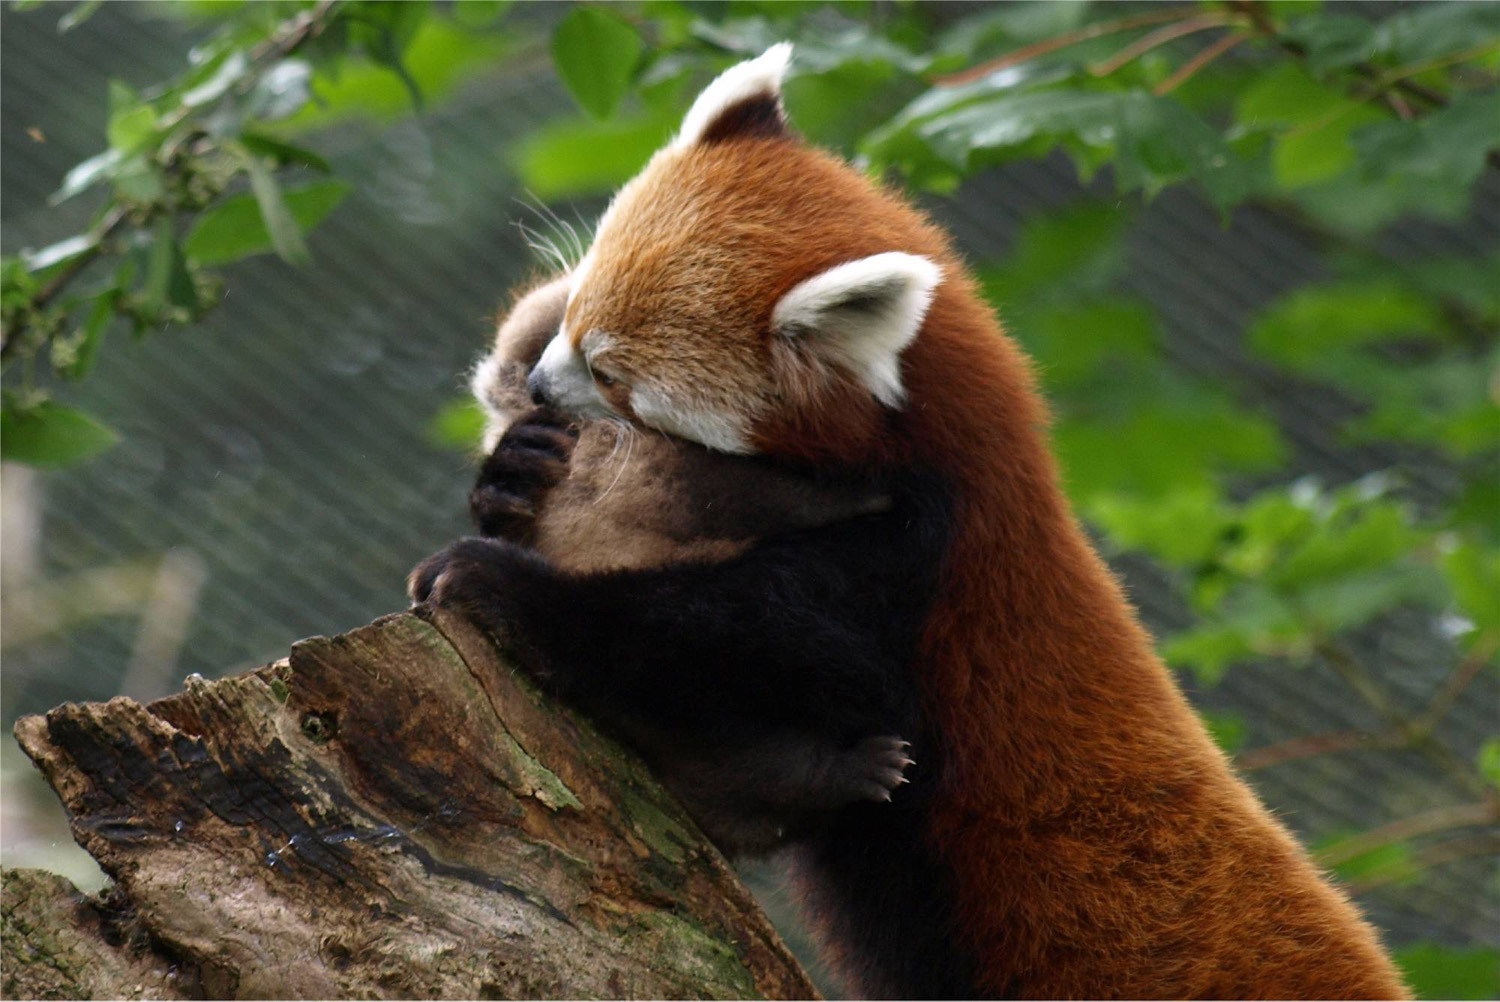 4K wallpaper: Adorable Cute Baby Red Panda Wallpaper